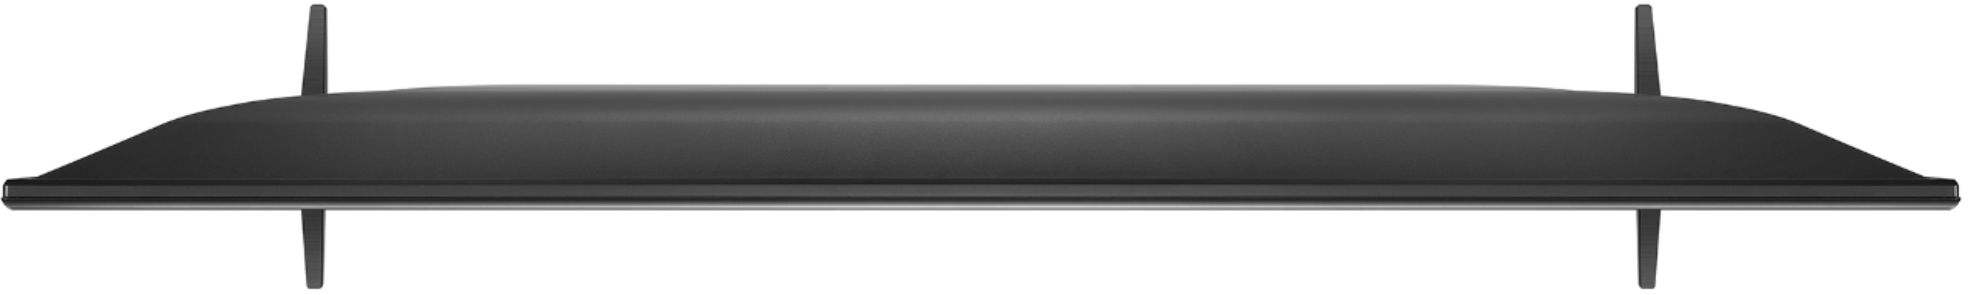  LG 60UM6900 - Paquete de TV LED inteligente HDR 4K UHD de 60  pulgadas con sonido envolvente Deco Gear Home Theater Barra de sonido de 31  pulgadas y cable óptico Toslink